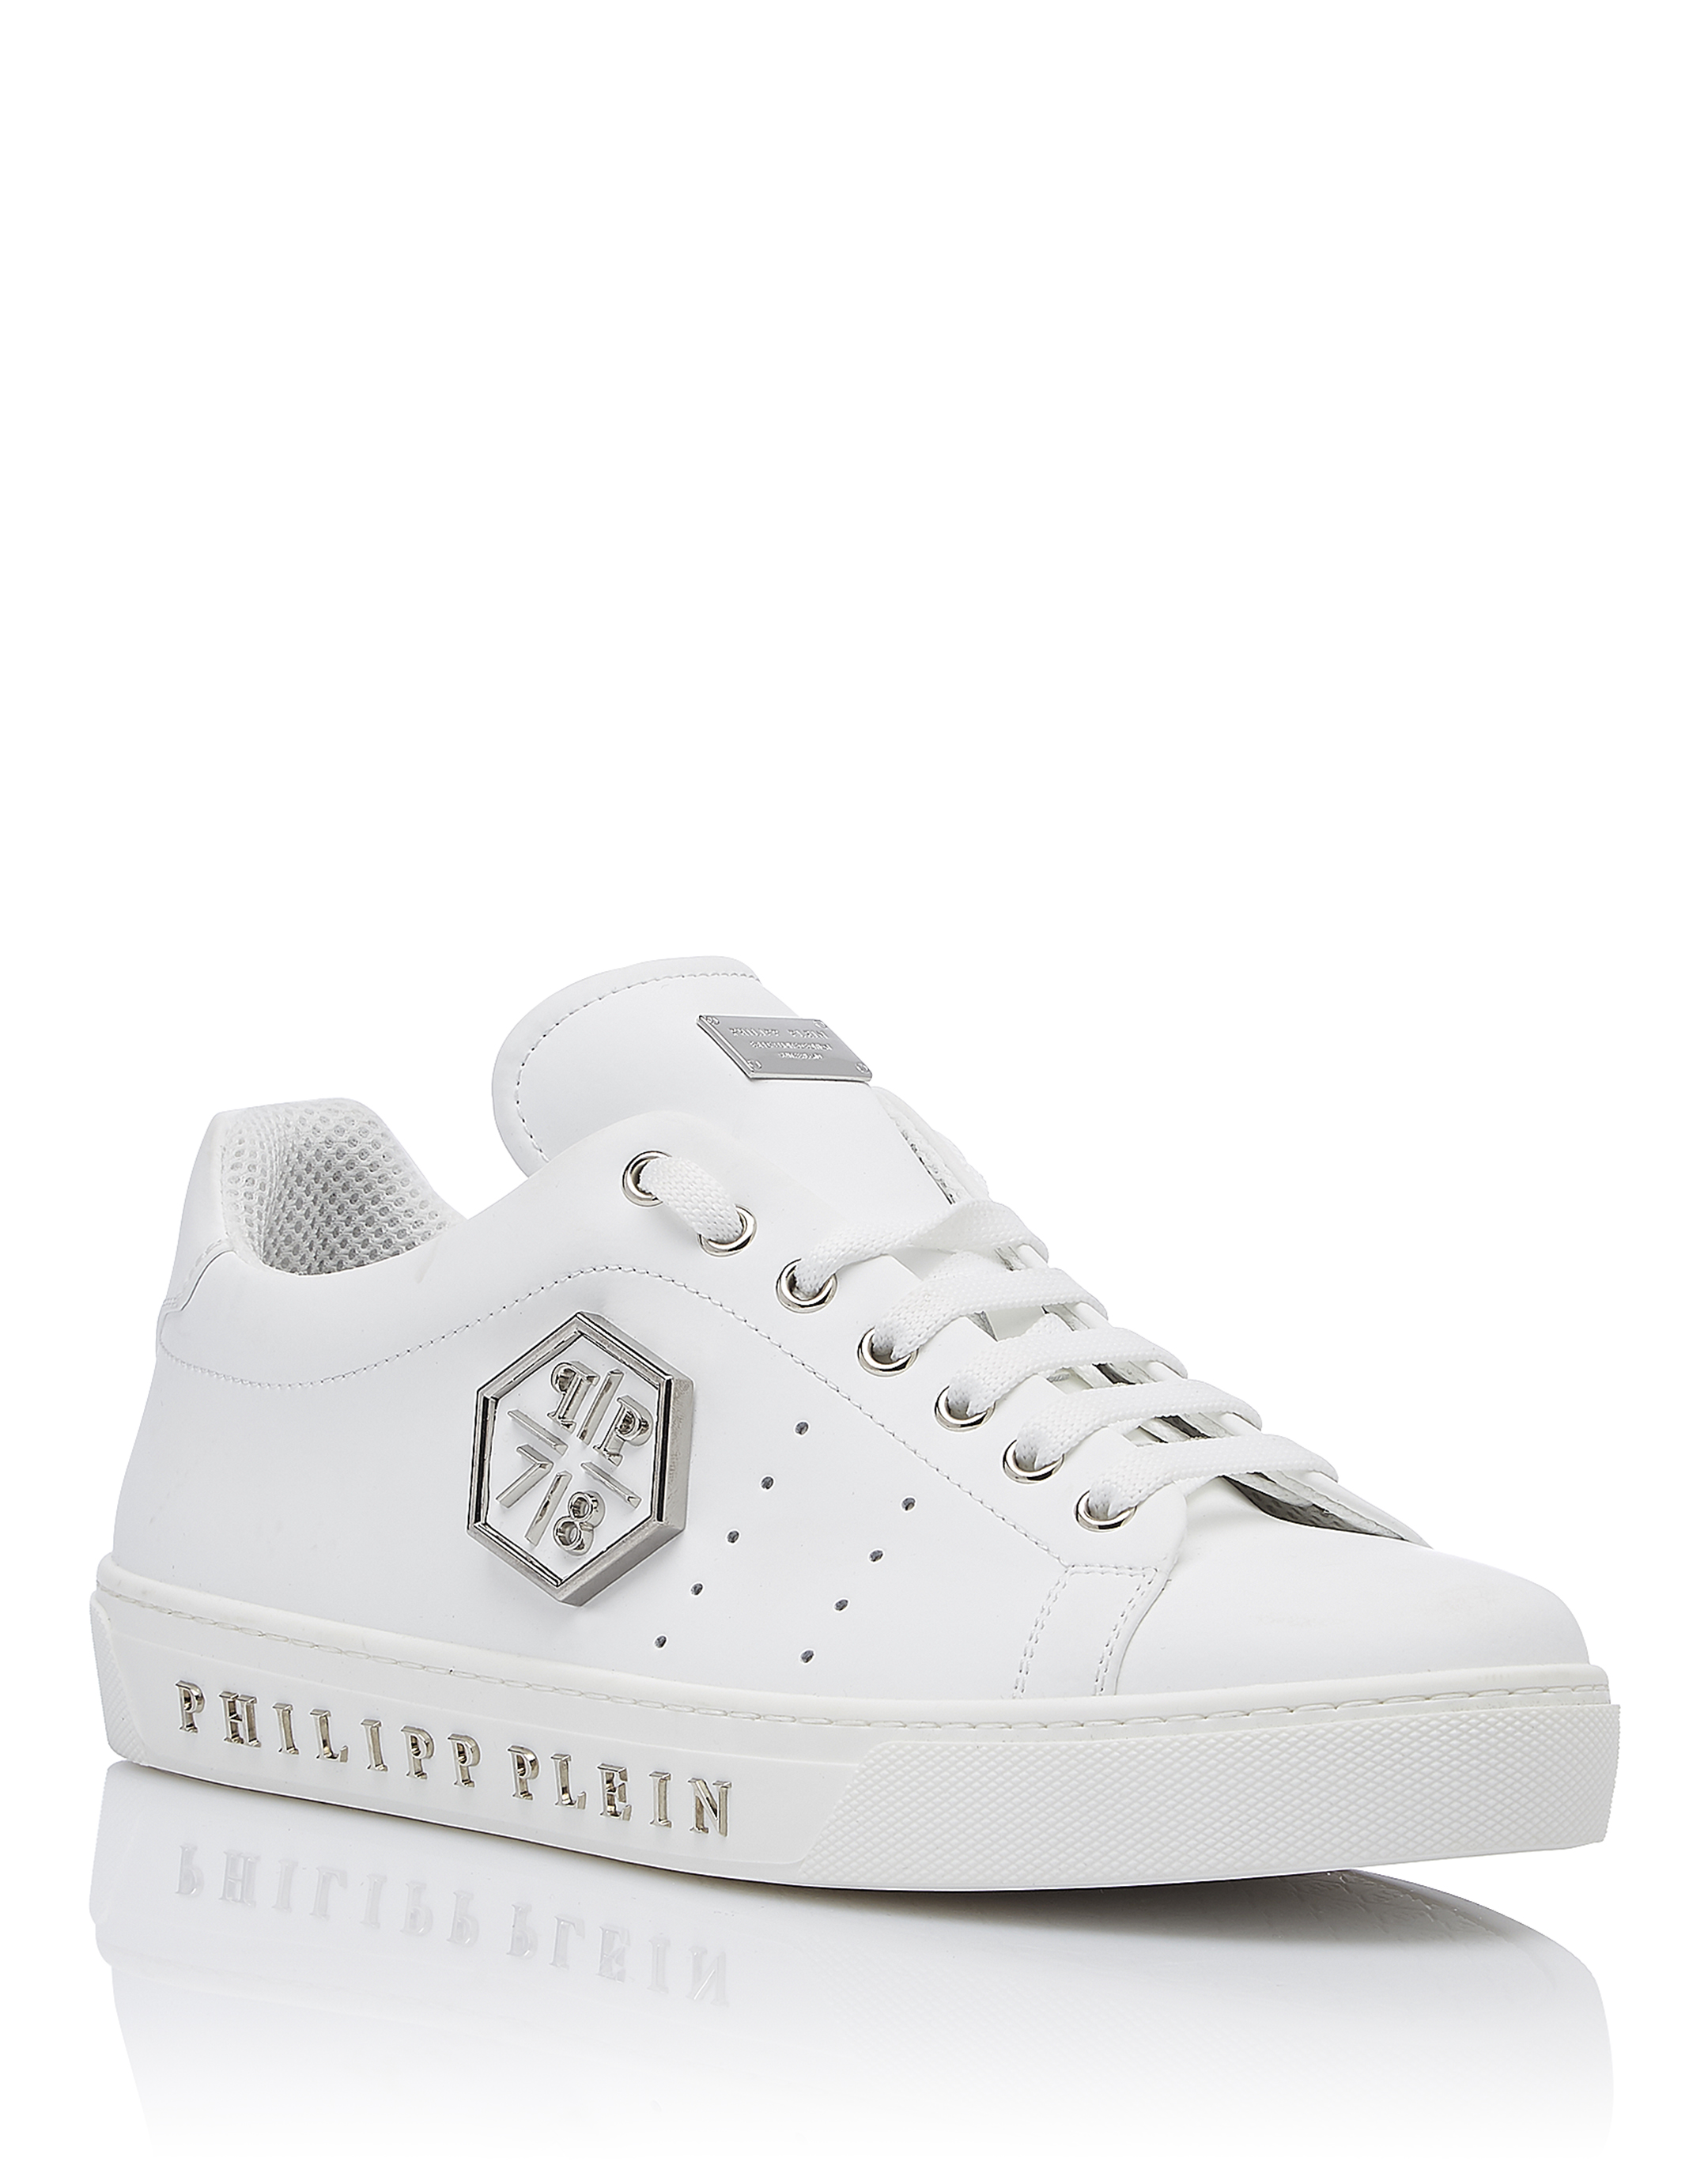 philipp plein sneakers white